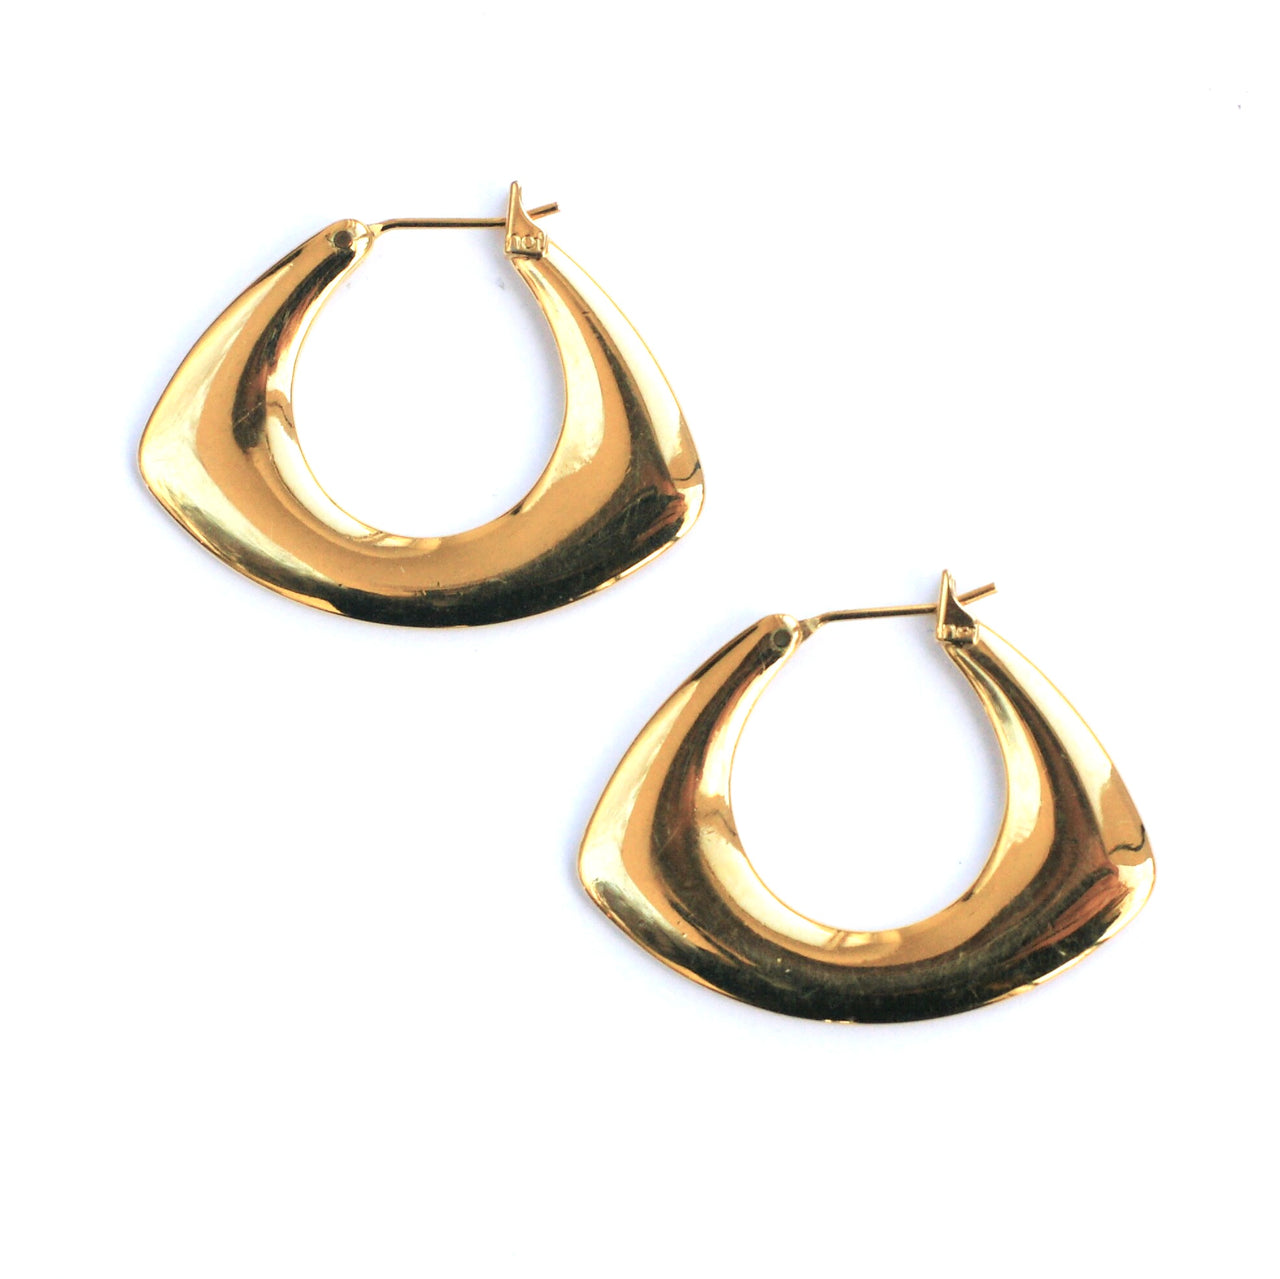 Vintage 14 Karat Yellow Gold Twist Hoop Earrings #13519 | eBay